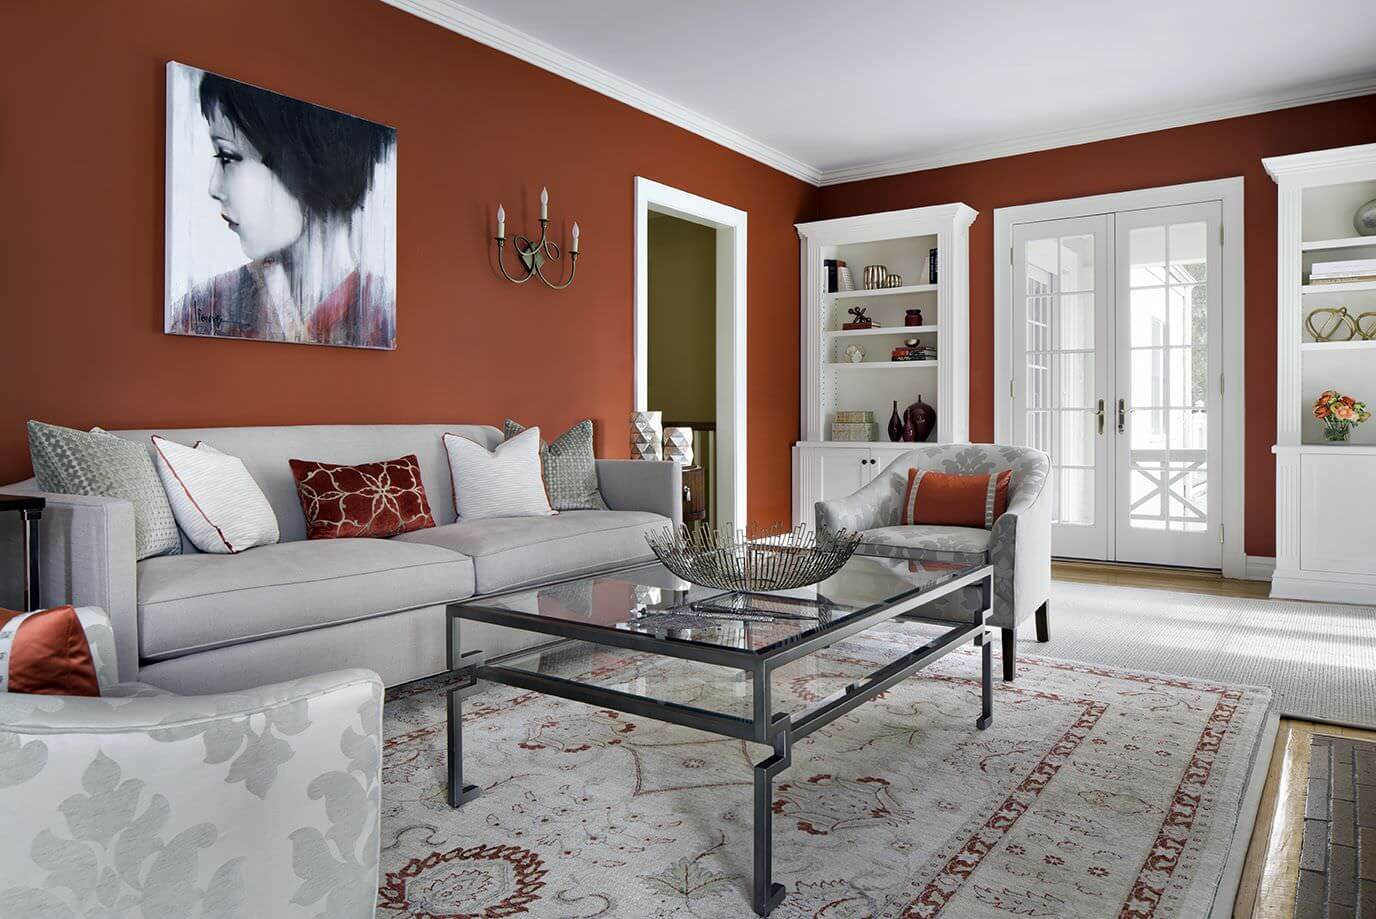 宽敞的起居空间以质朴的红色墙壁以及白色的书架和灰色的座椅为特色。